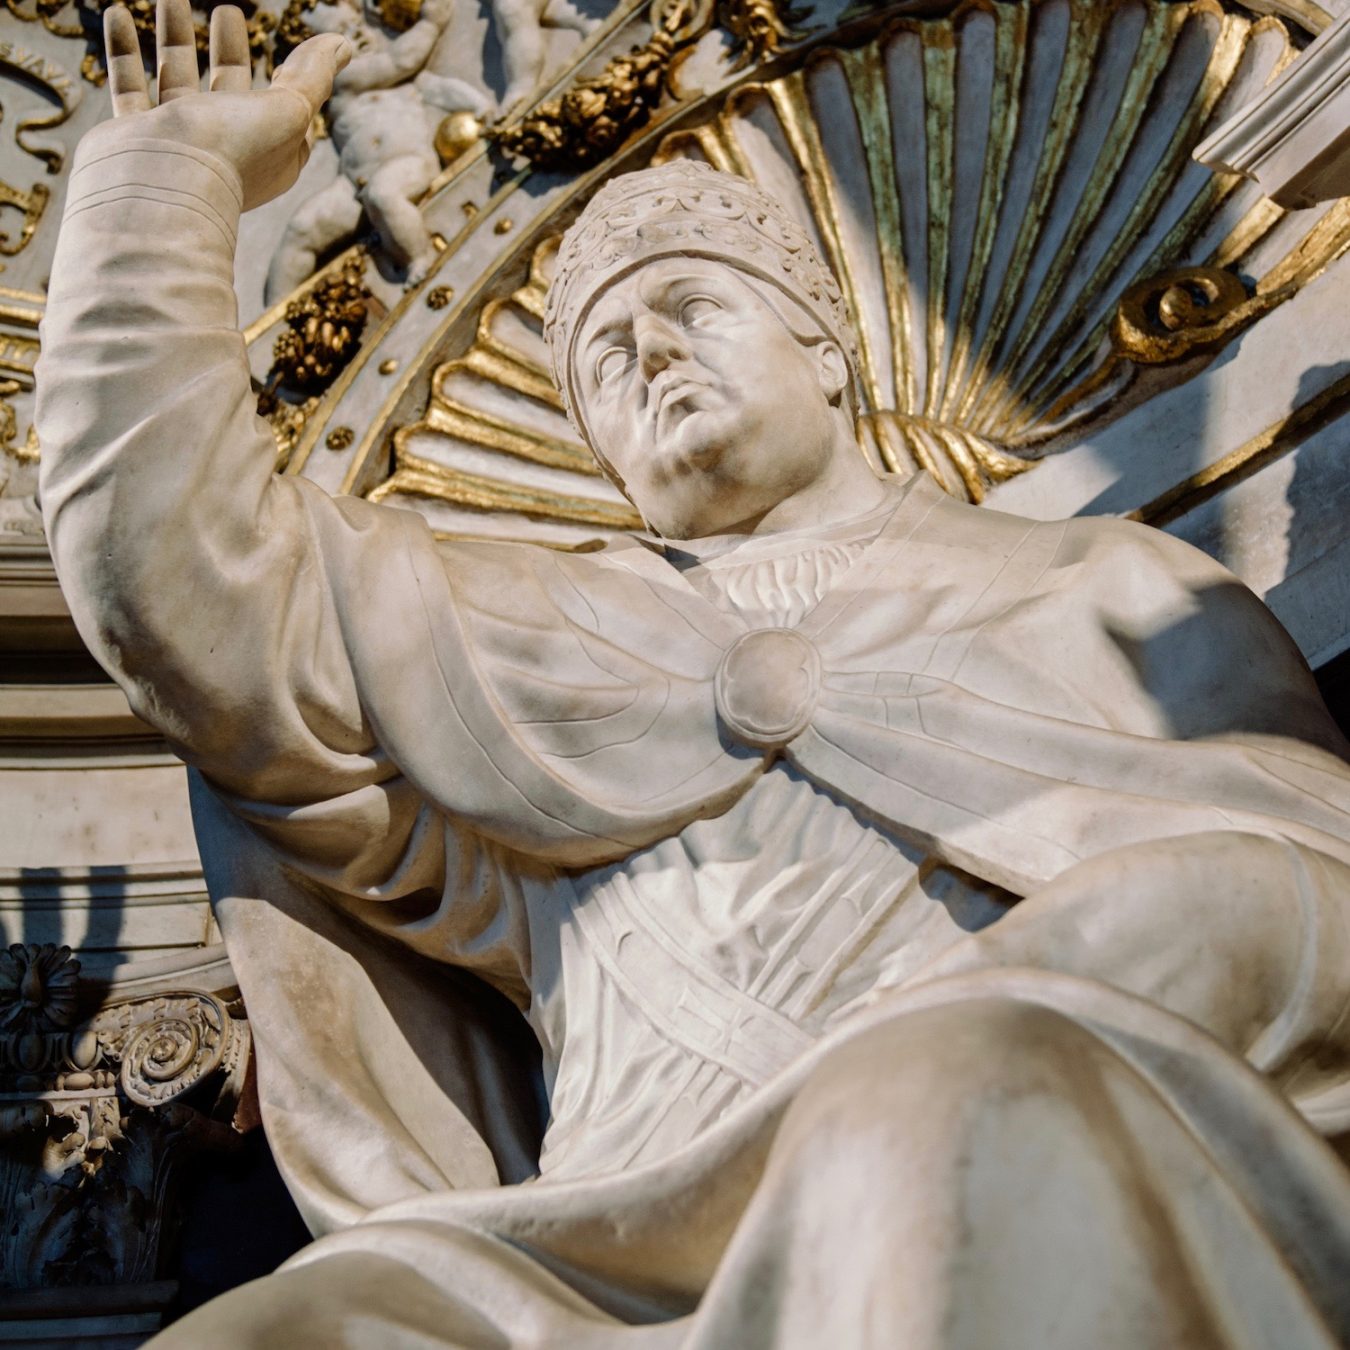 Alla morte di Lorenzo il Magnifico, il potere passò a Piero dei Medici inaugurando un periodo nero della storia di Firenze e della Repubblica Fiorentina.